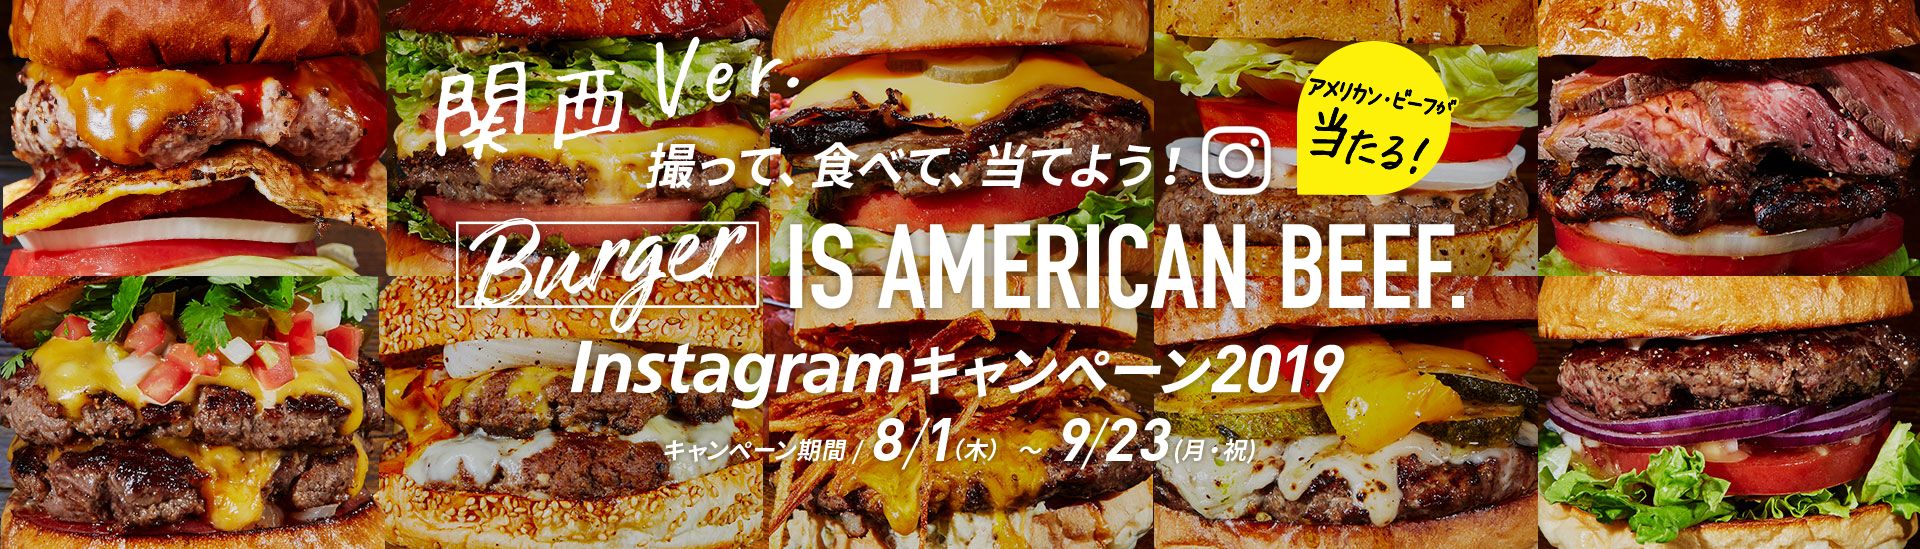 関東 ver. アメリカン・ビーフが当たる！ 撮って、食べて、当てよう！ Burger IS AMERICAN BEEF. Instagramキャンペーン2019 キャンペーン期間：7/21（日）〜9/23（月・祝）